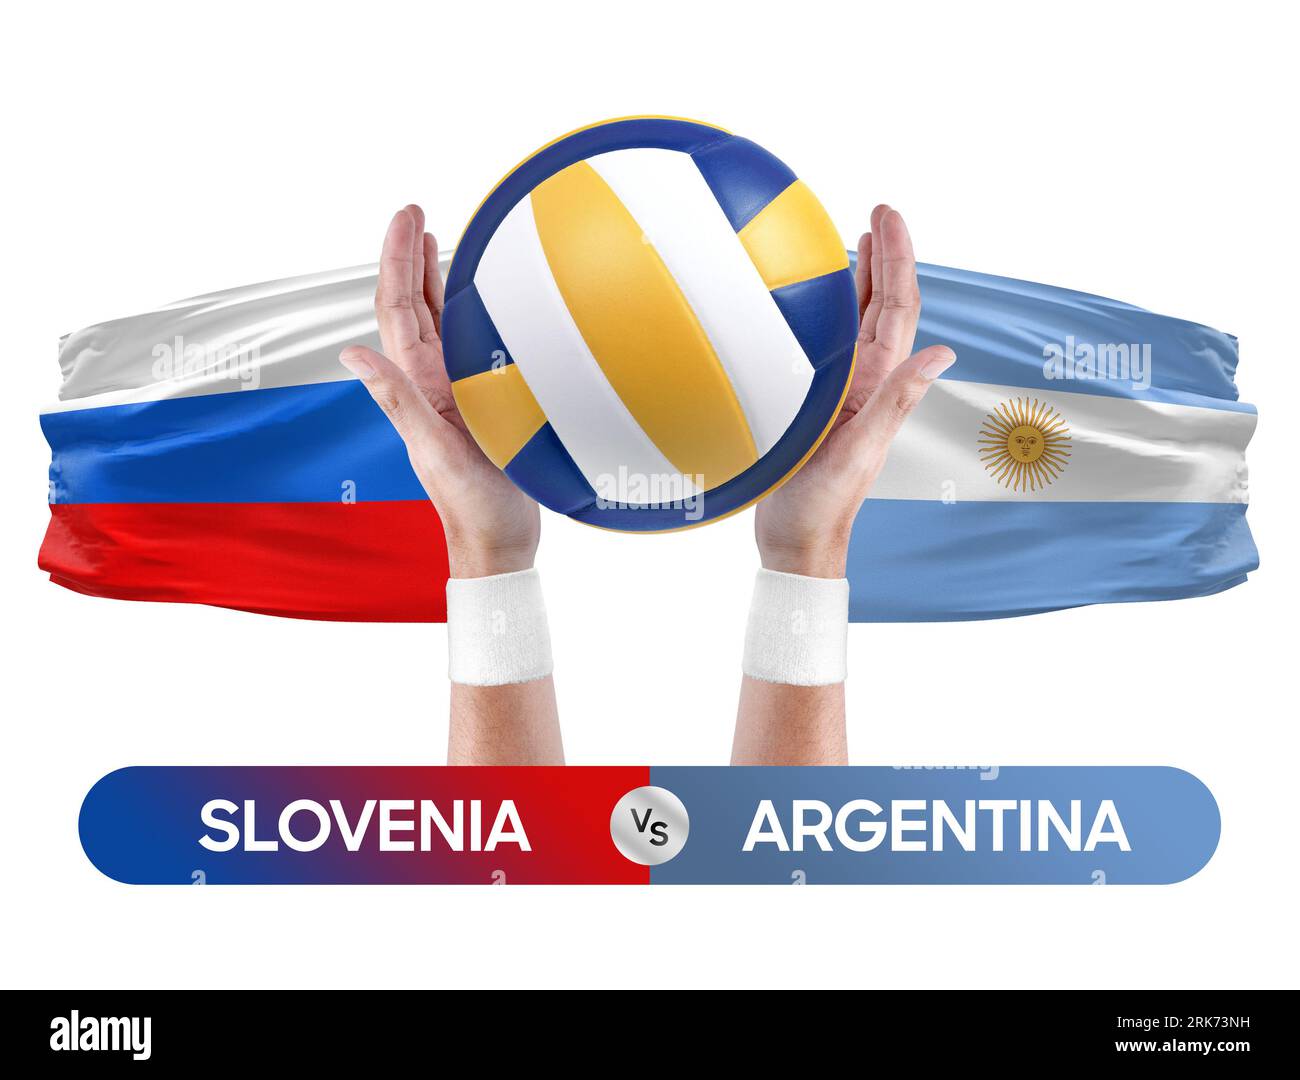 Slowenien gegen Argentinien Nationalmannschaften Volleyball Volleyball Volleyball Match Competition Concept. Stockfoto